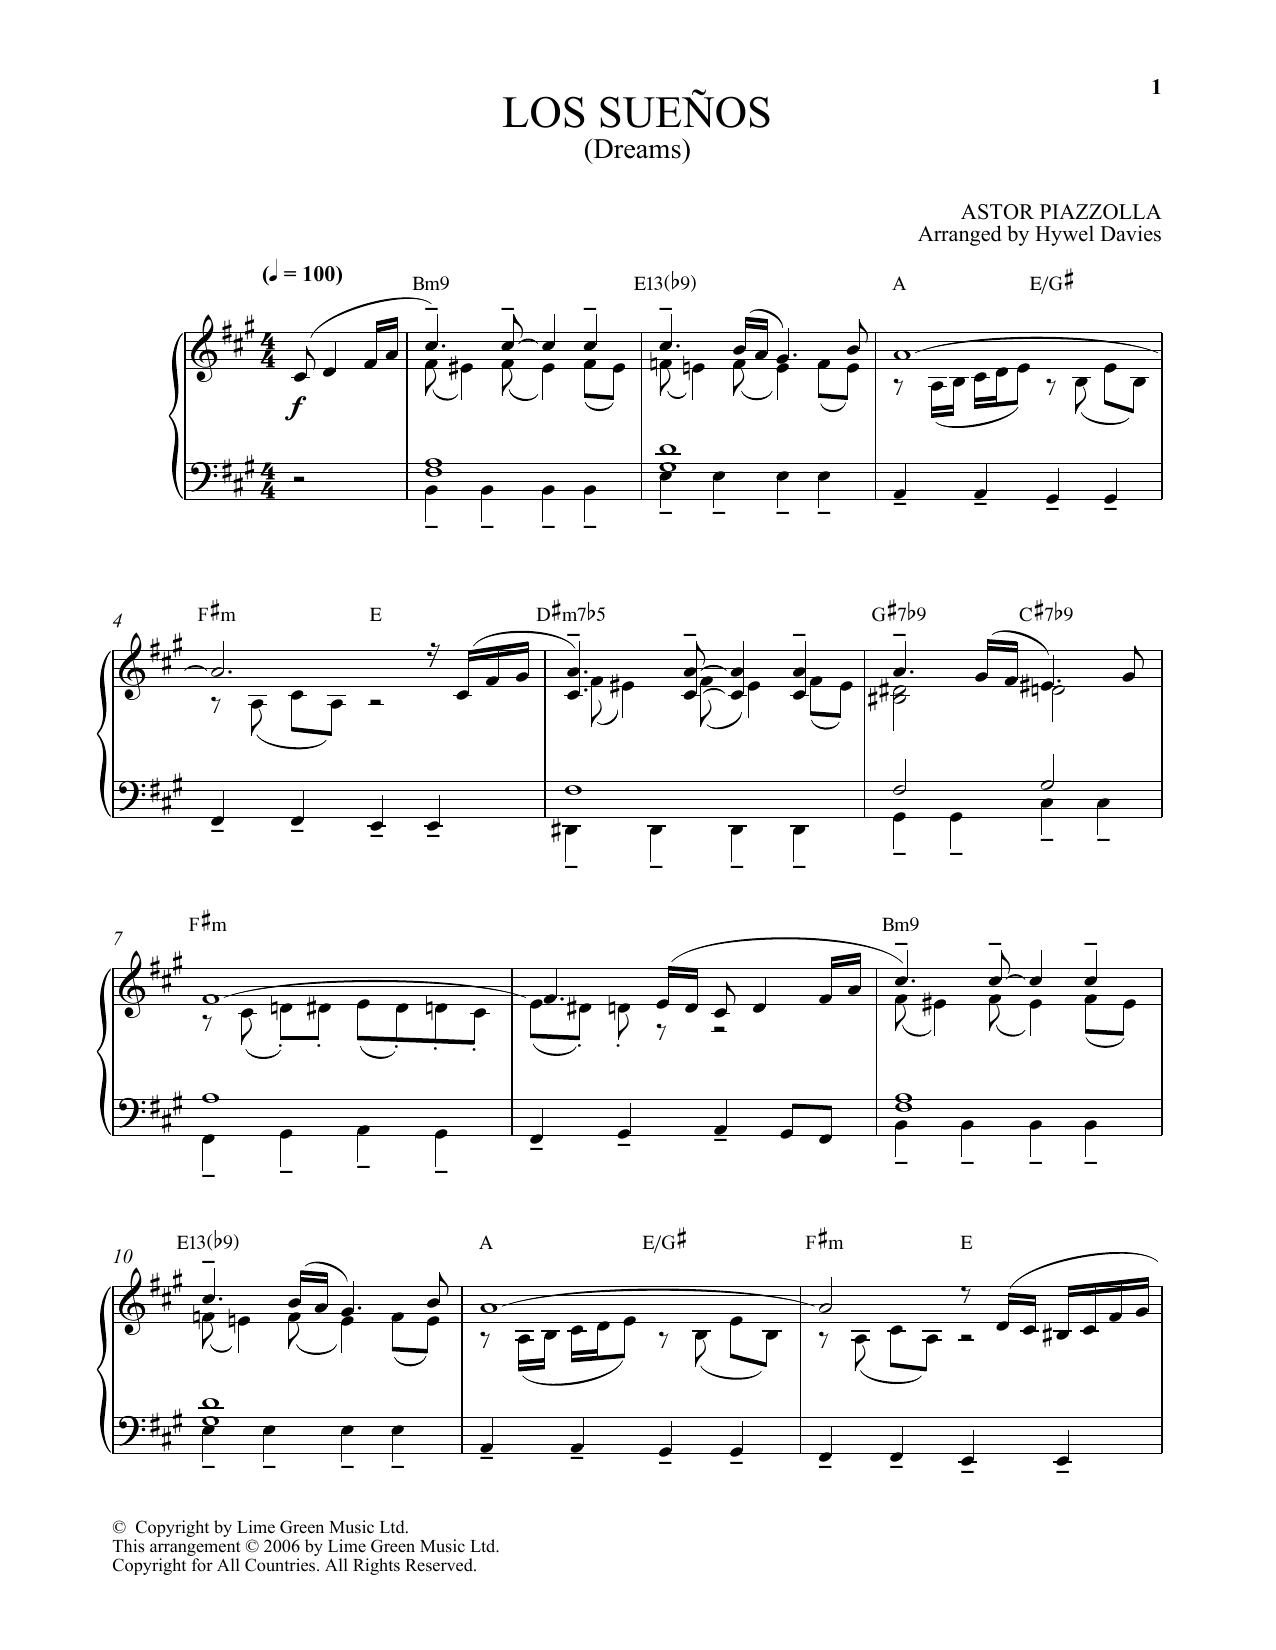 Download Astor Piazzolla Los Suenos Sheet Music